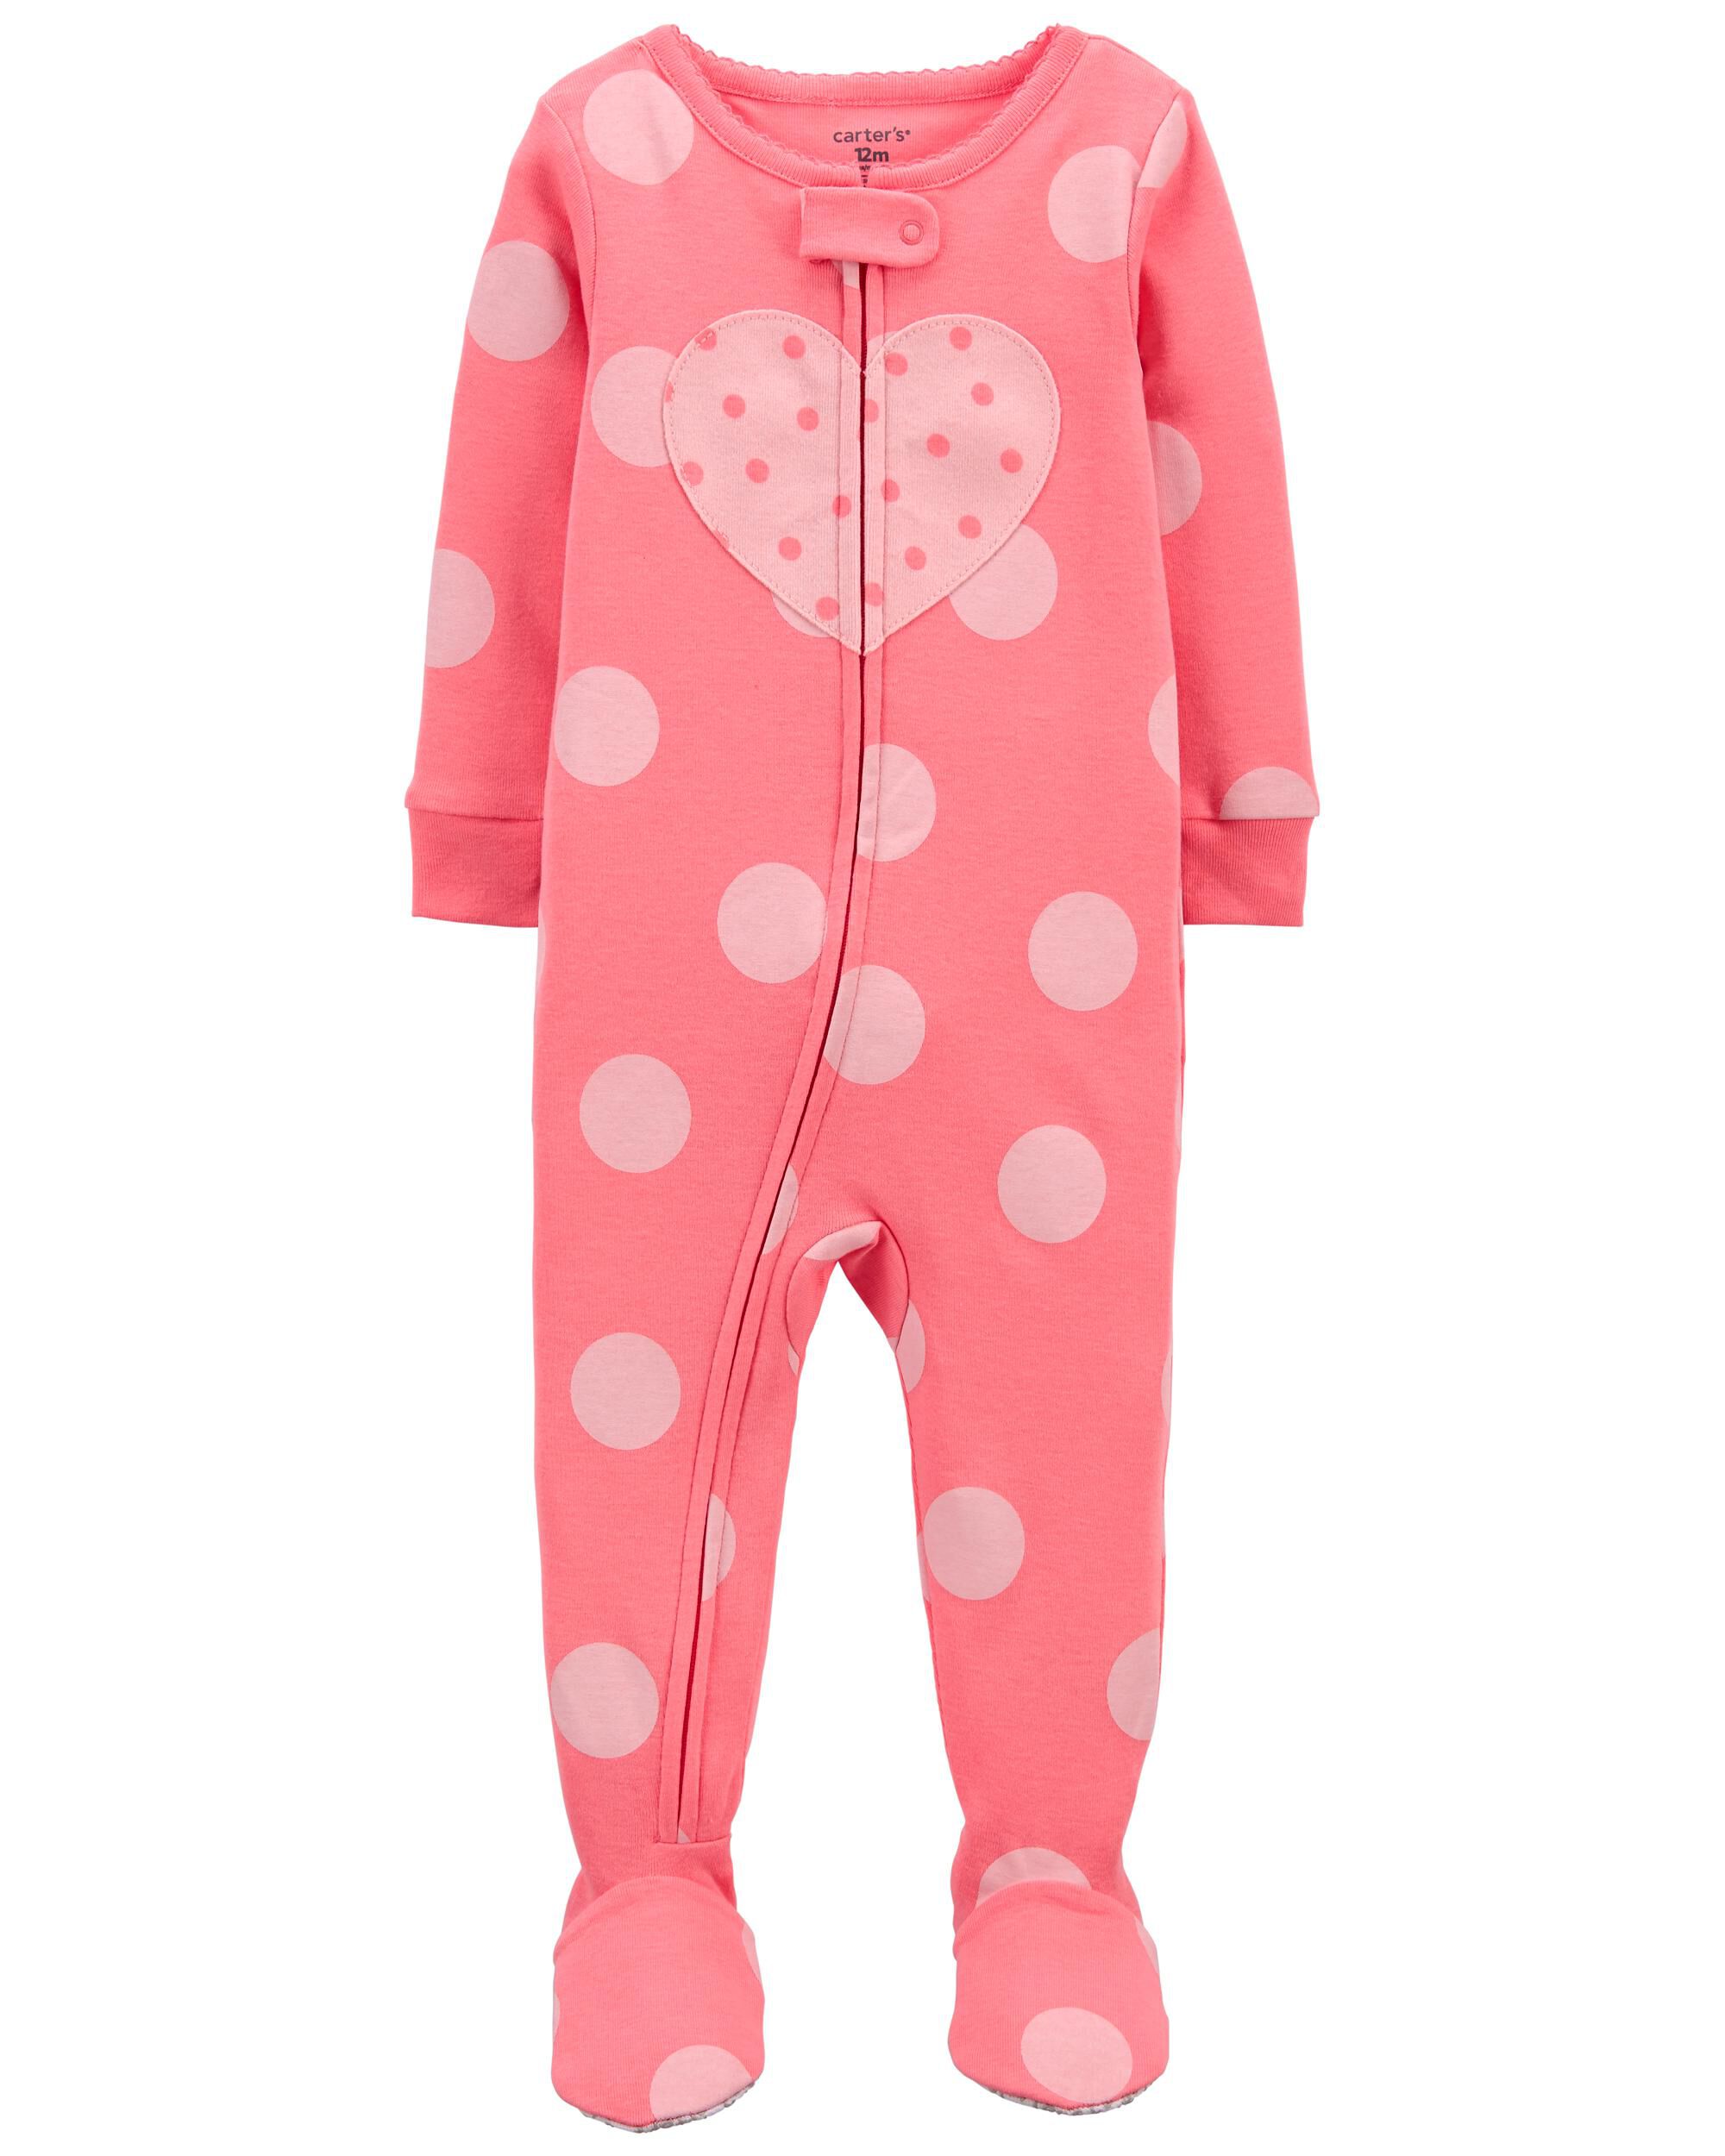 Schlafanzug Weihnachten rosa pink 62-92 NEU Carters Pyjama Gr 